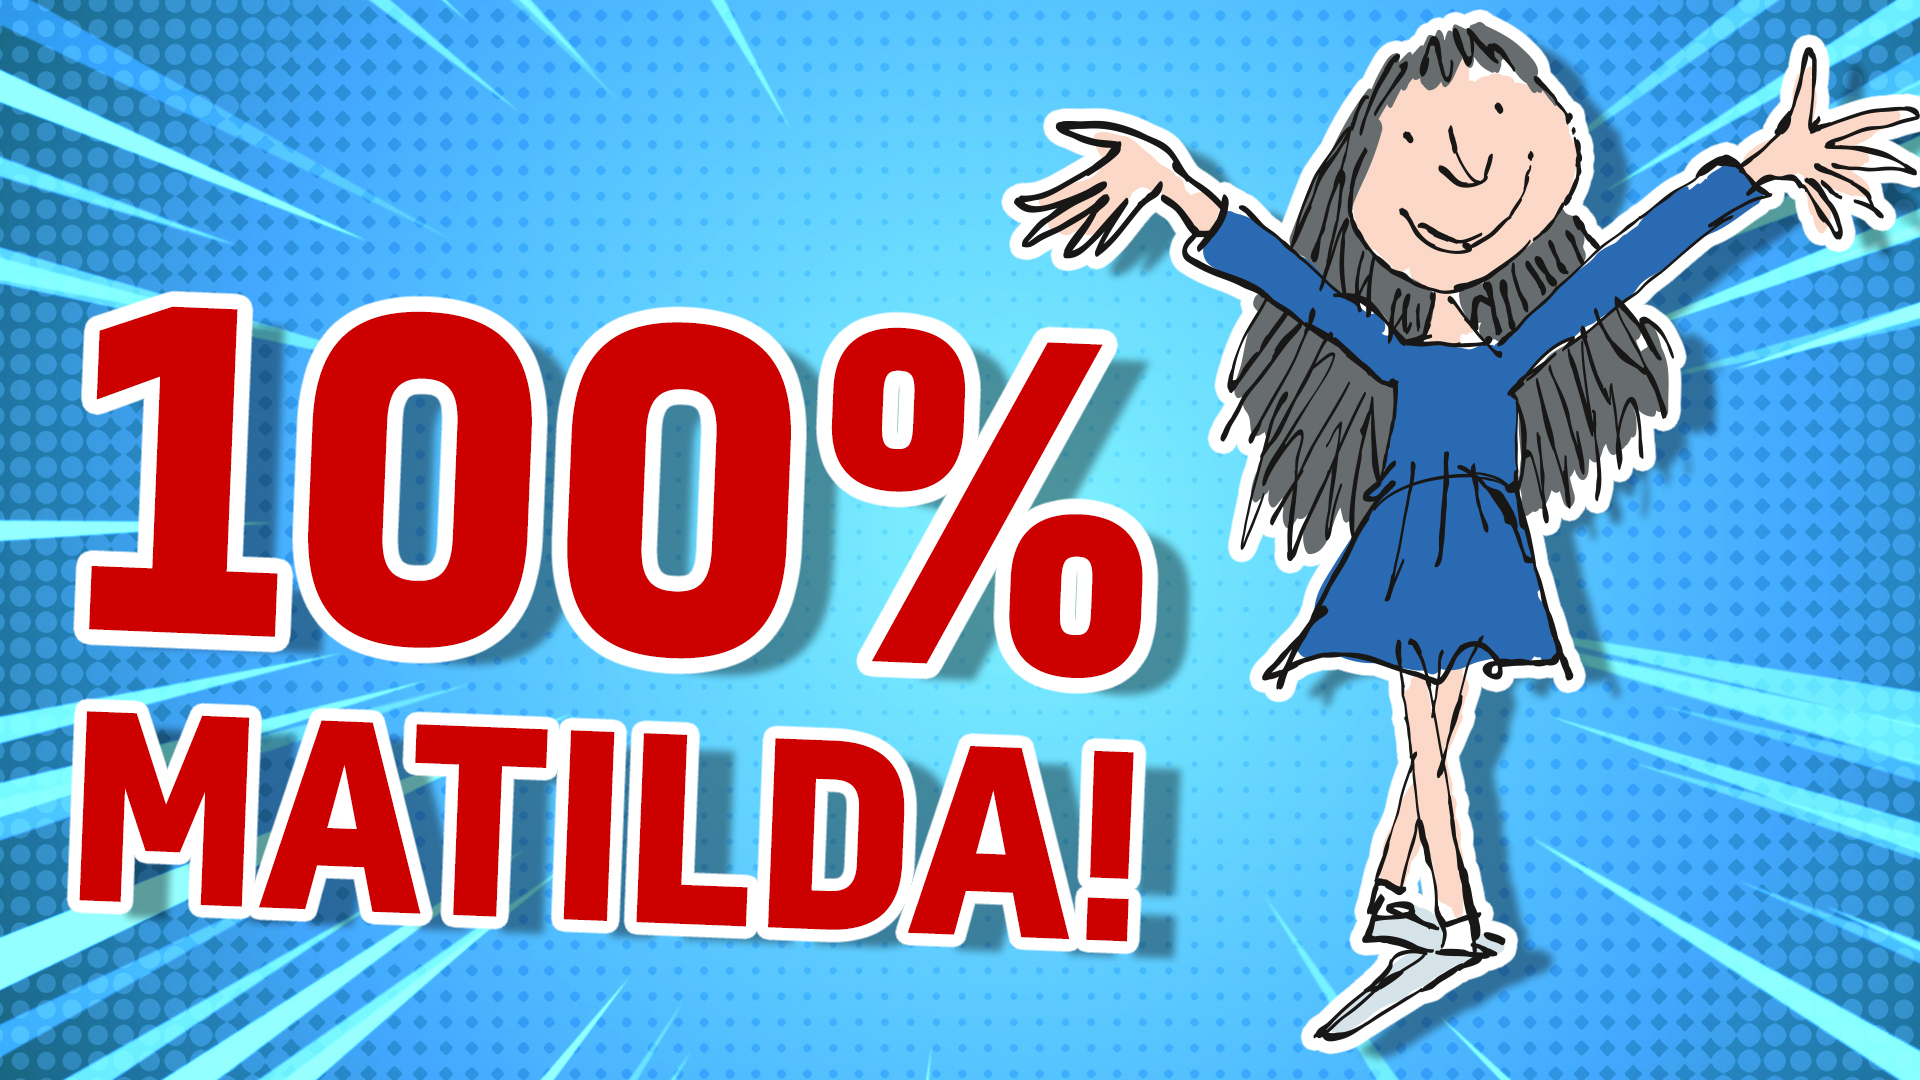 100% Matilda